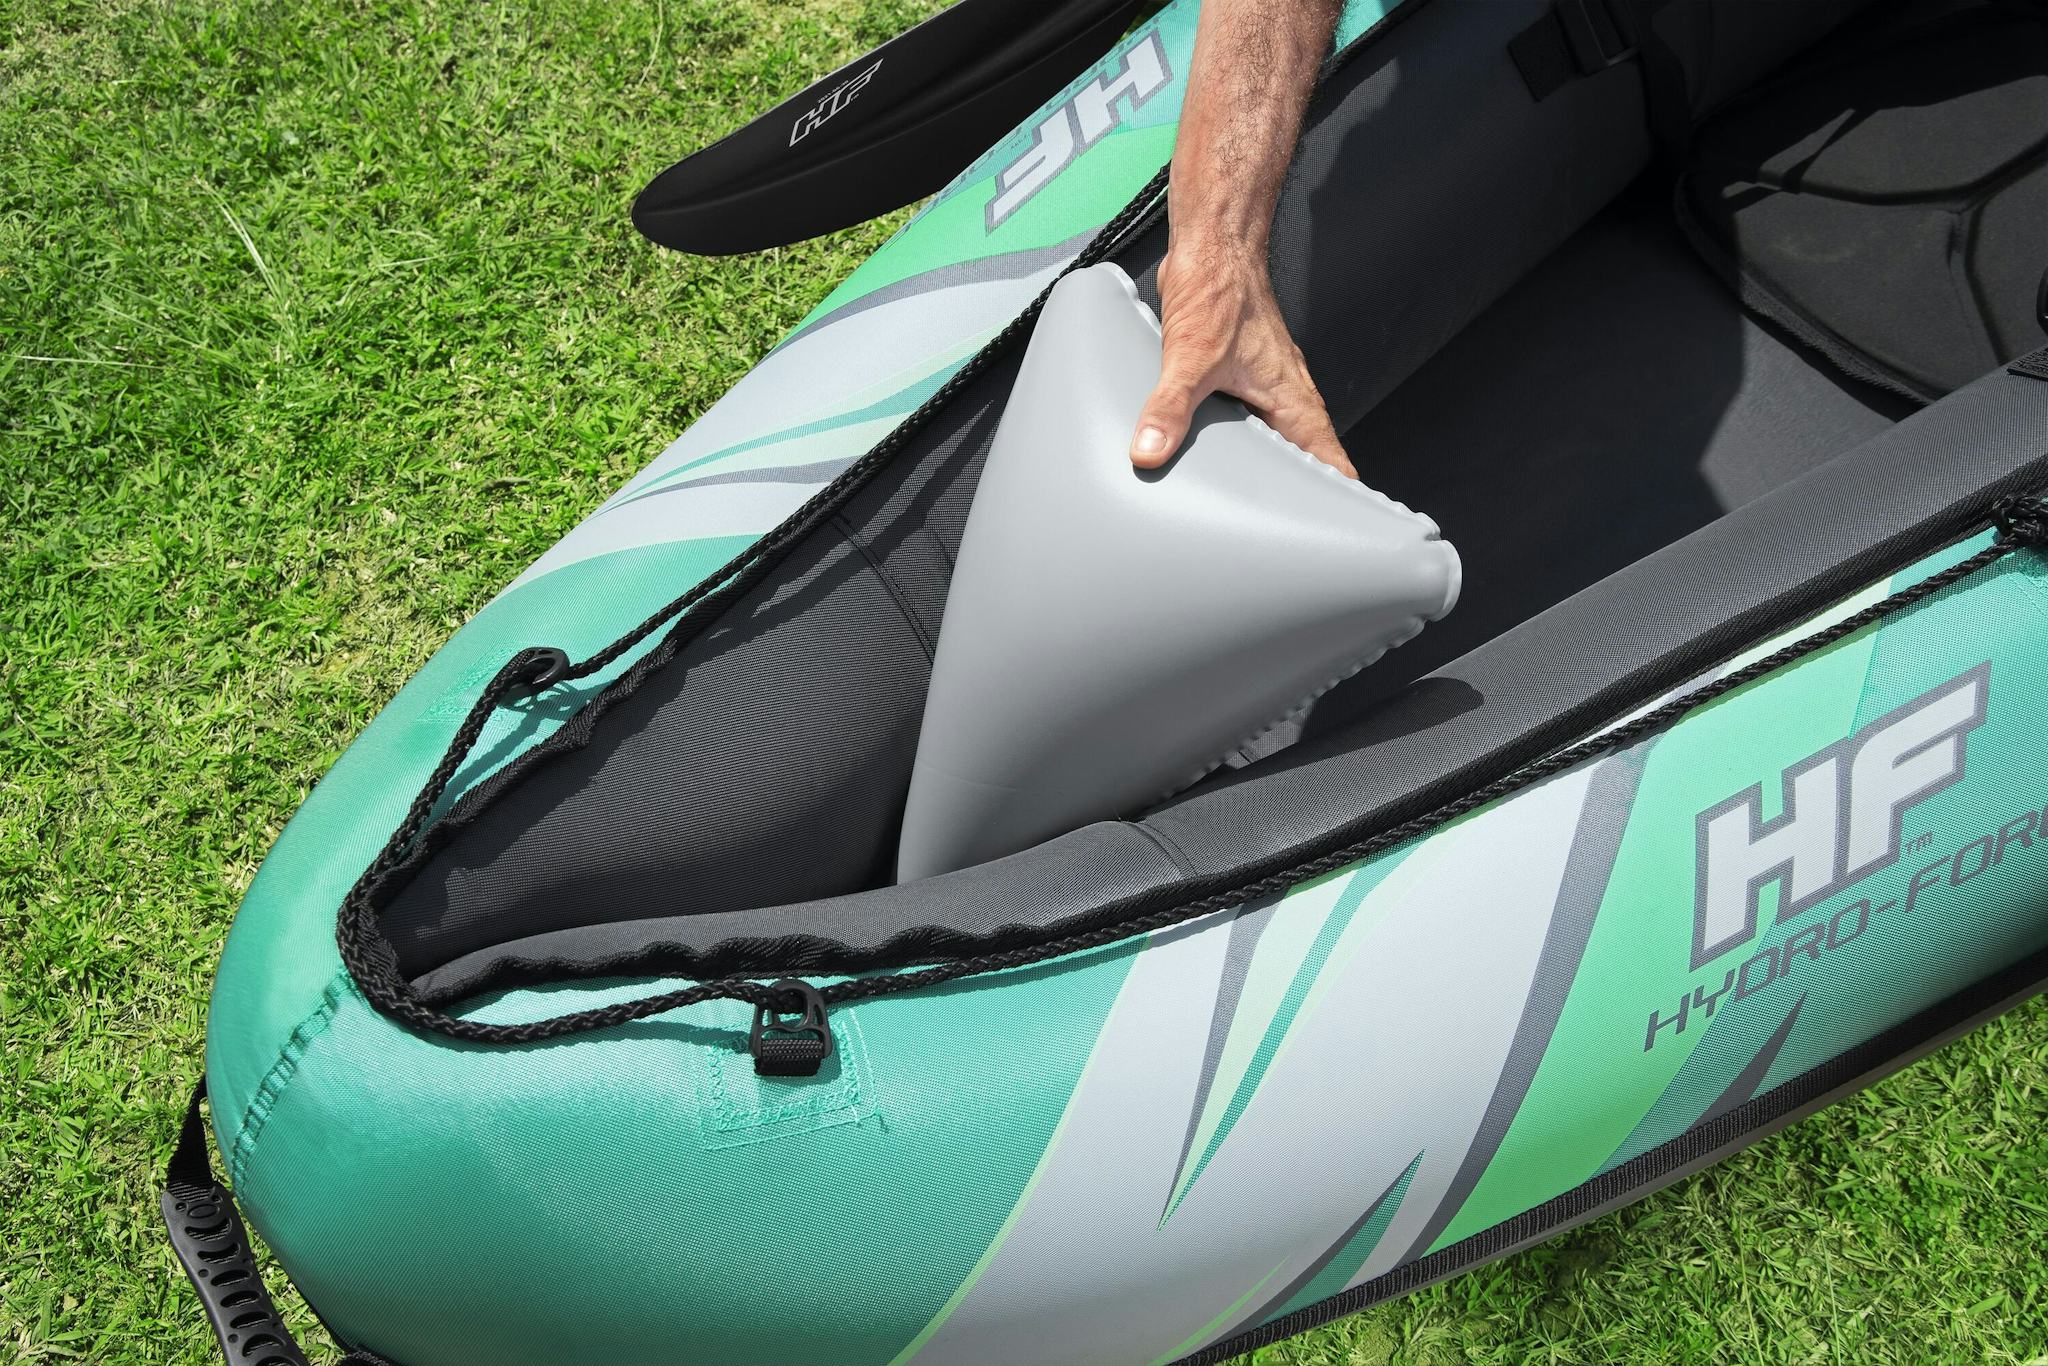 Sports d'eau Kayak gonflable Hydro-Force™ Ventura Elite X2 330 x 86 cm 2 adultes, pagaie, pompe Bestway 4